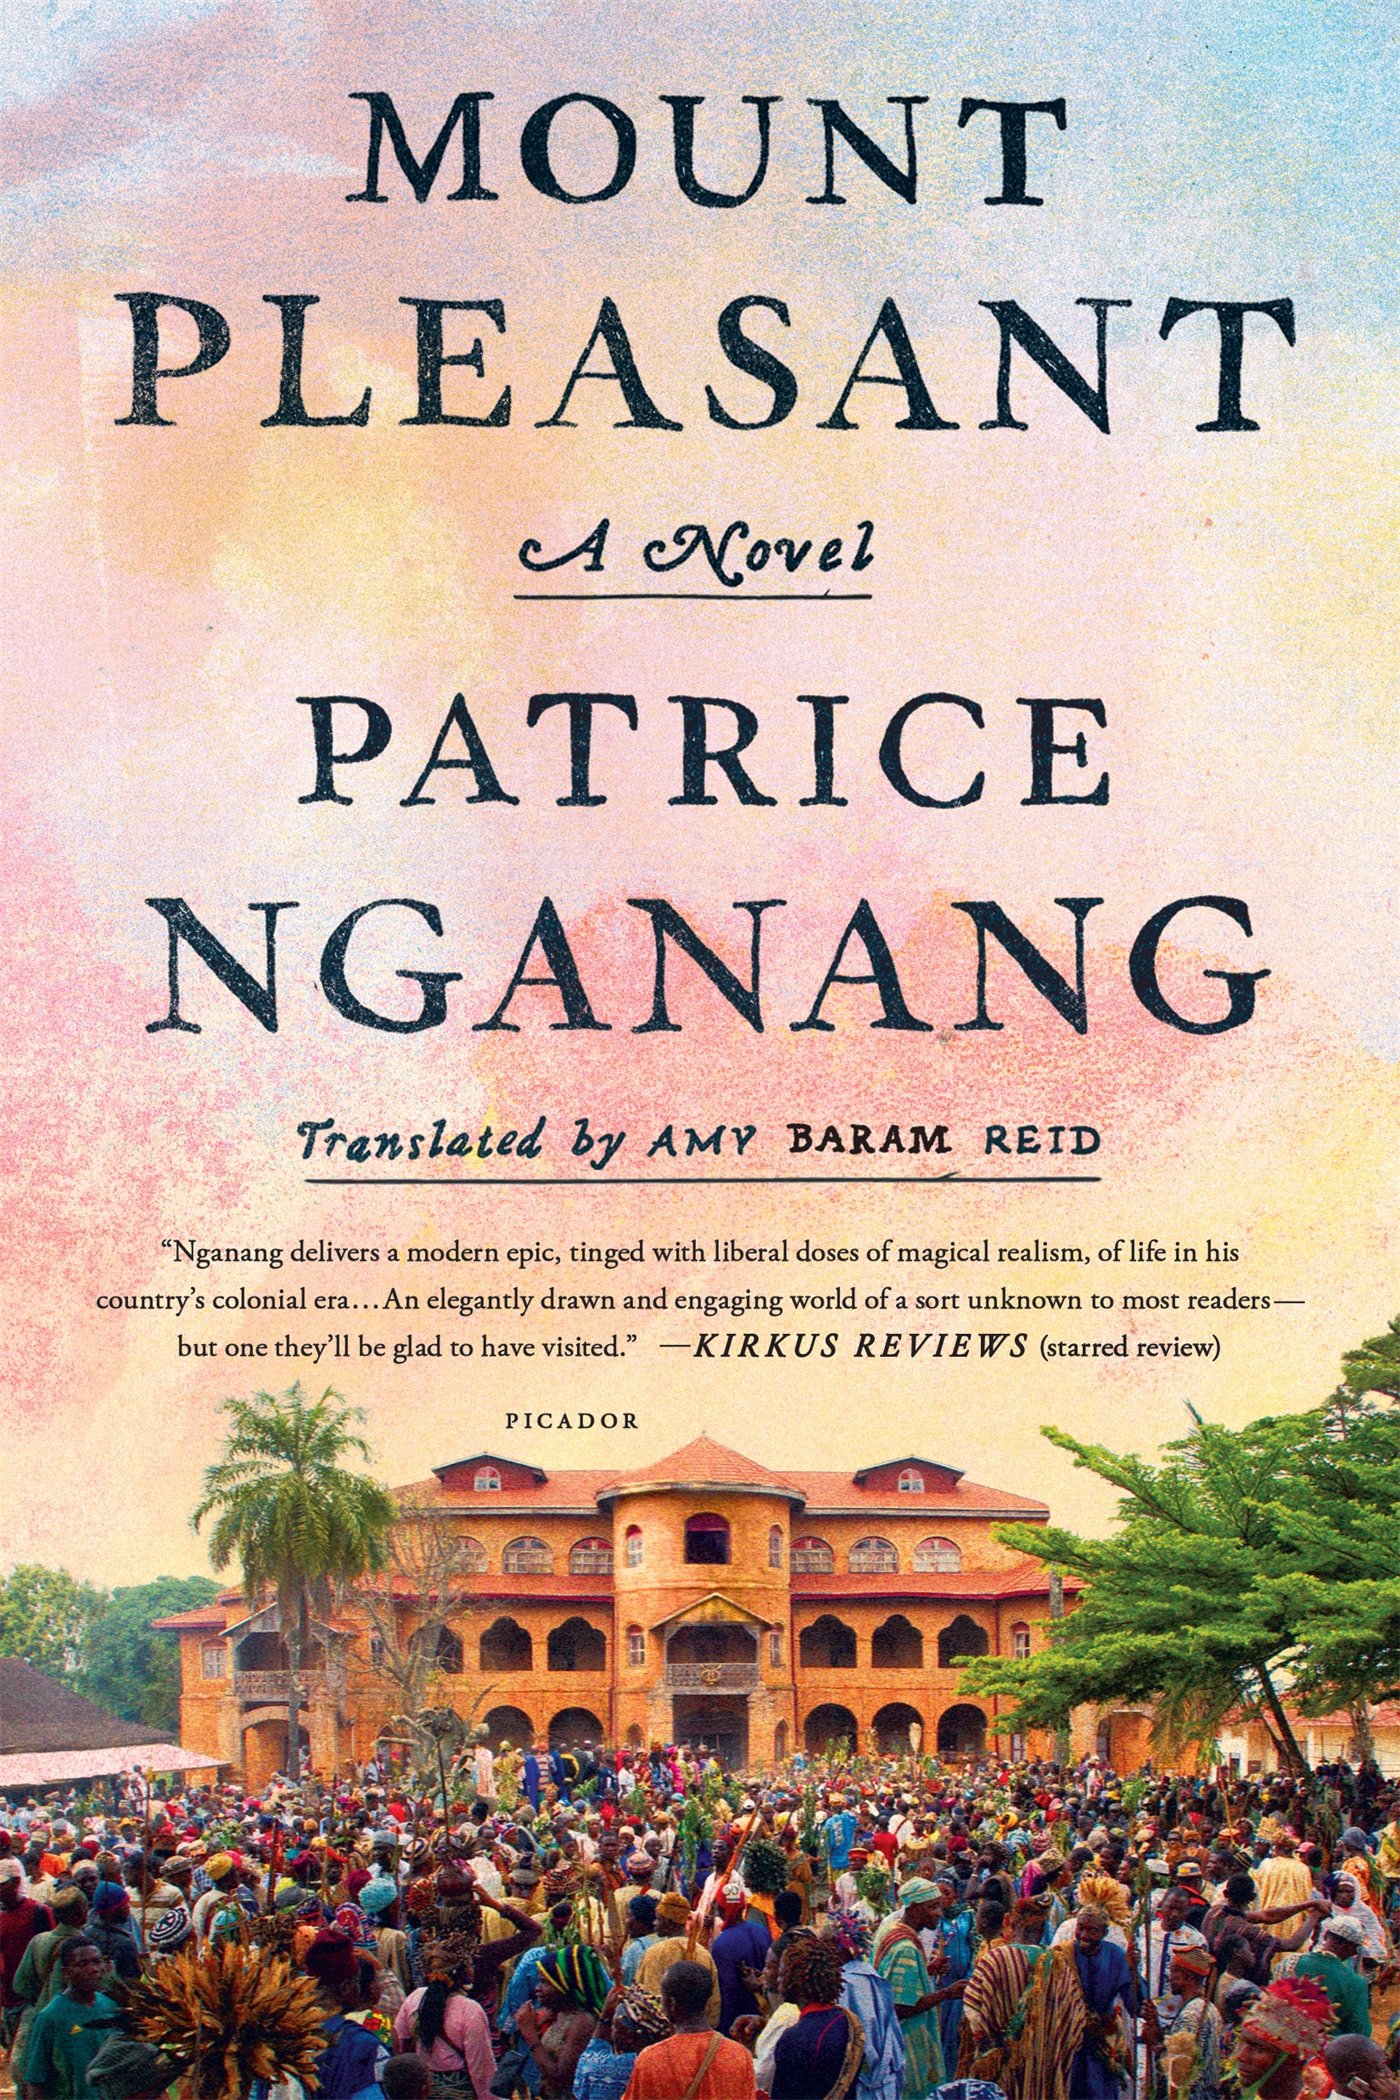 Mount Pleasant: A Novel